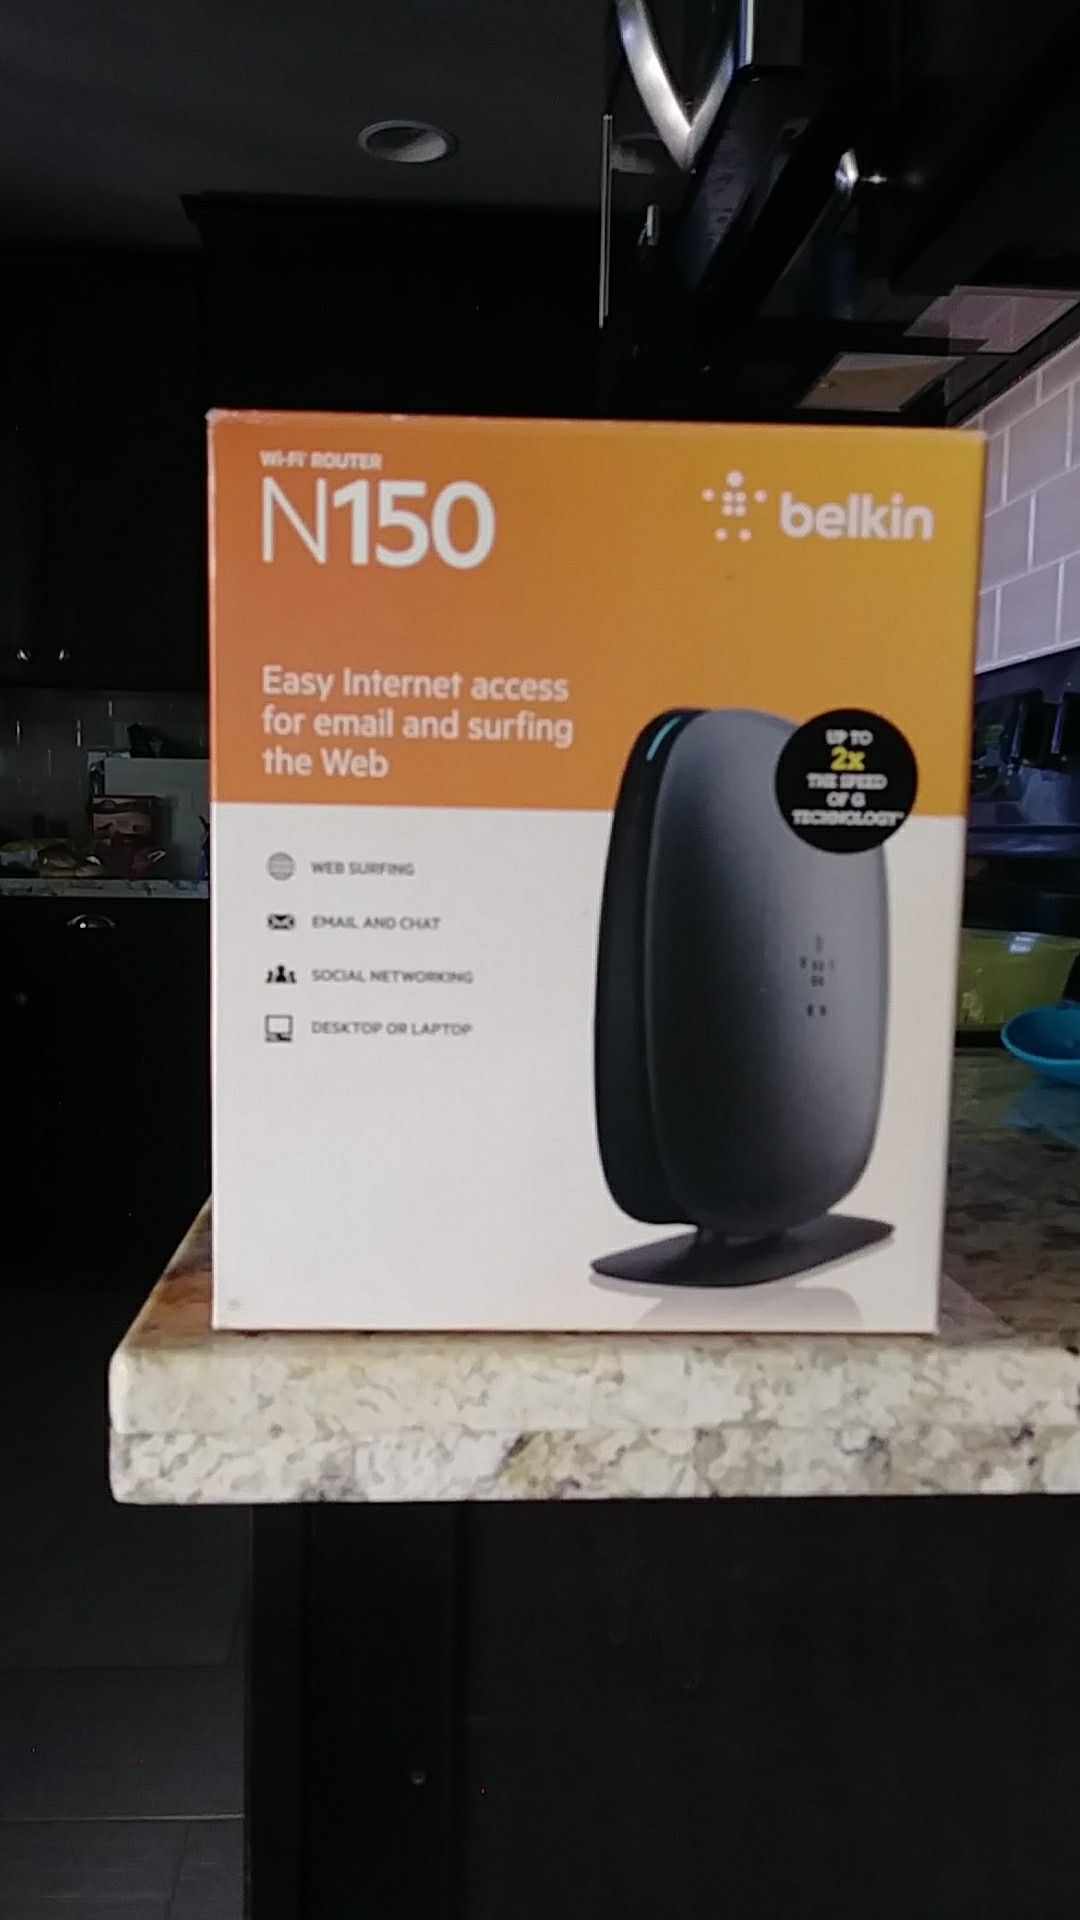 Belkin N150 WI-FI Router